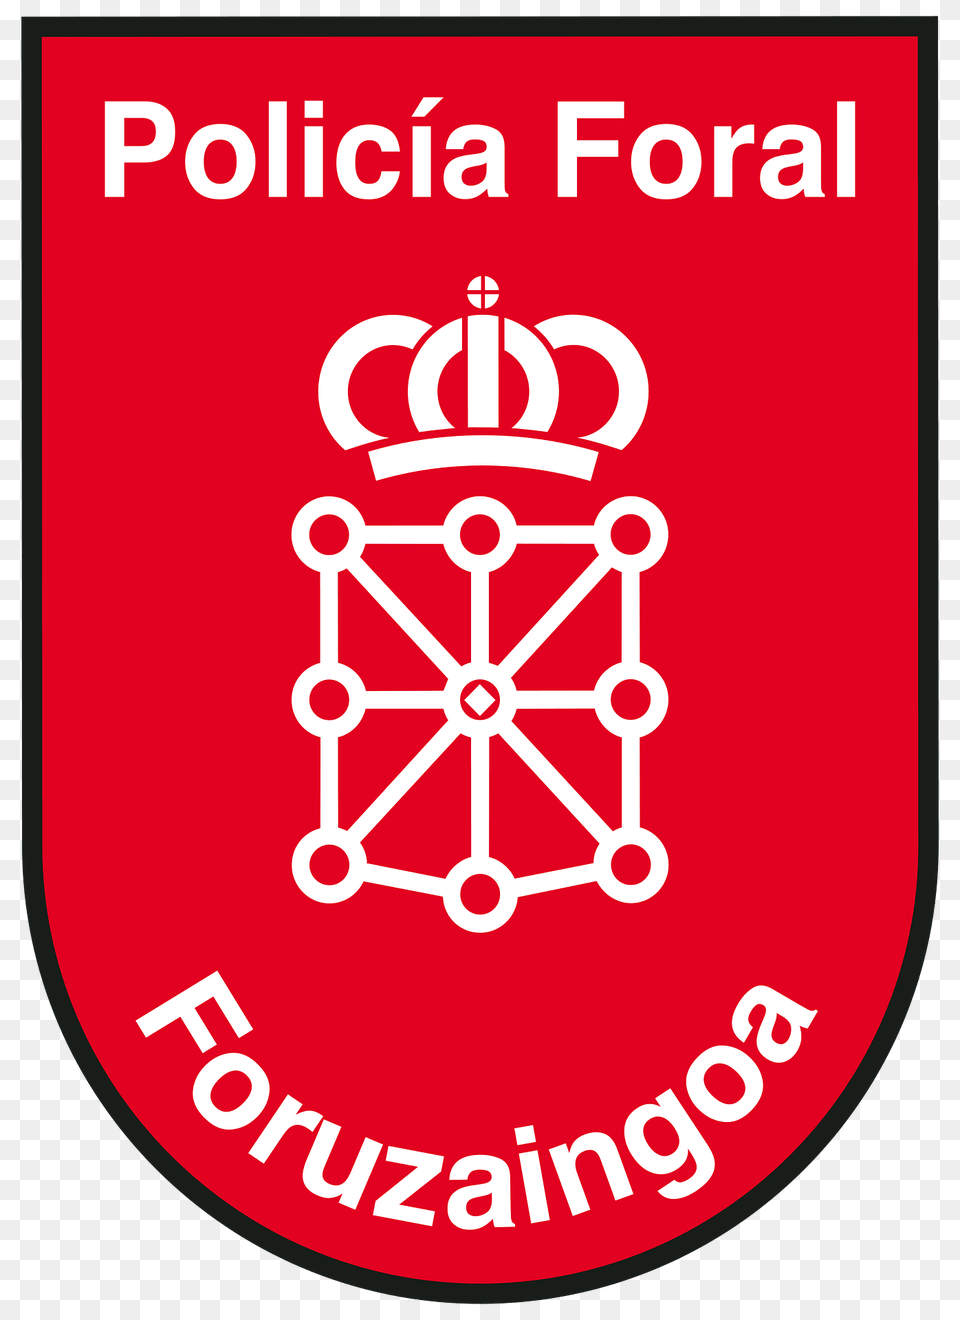 Emblema De La Policia Foral Clipart, Logo, Symbol Png